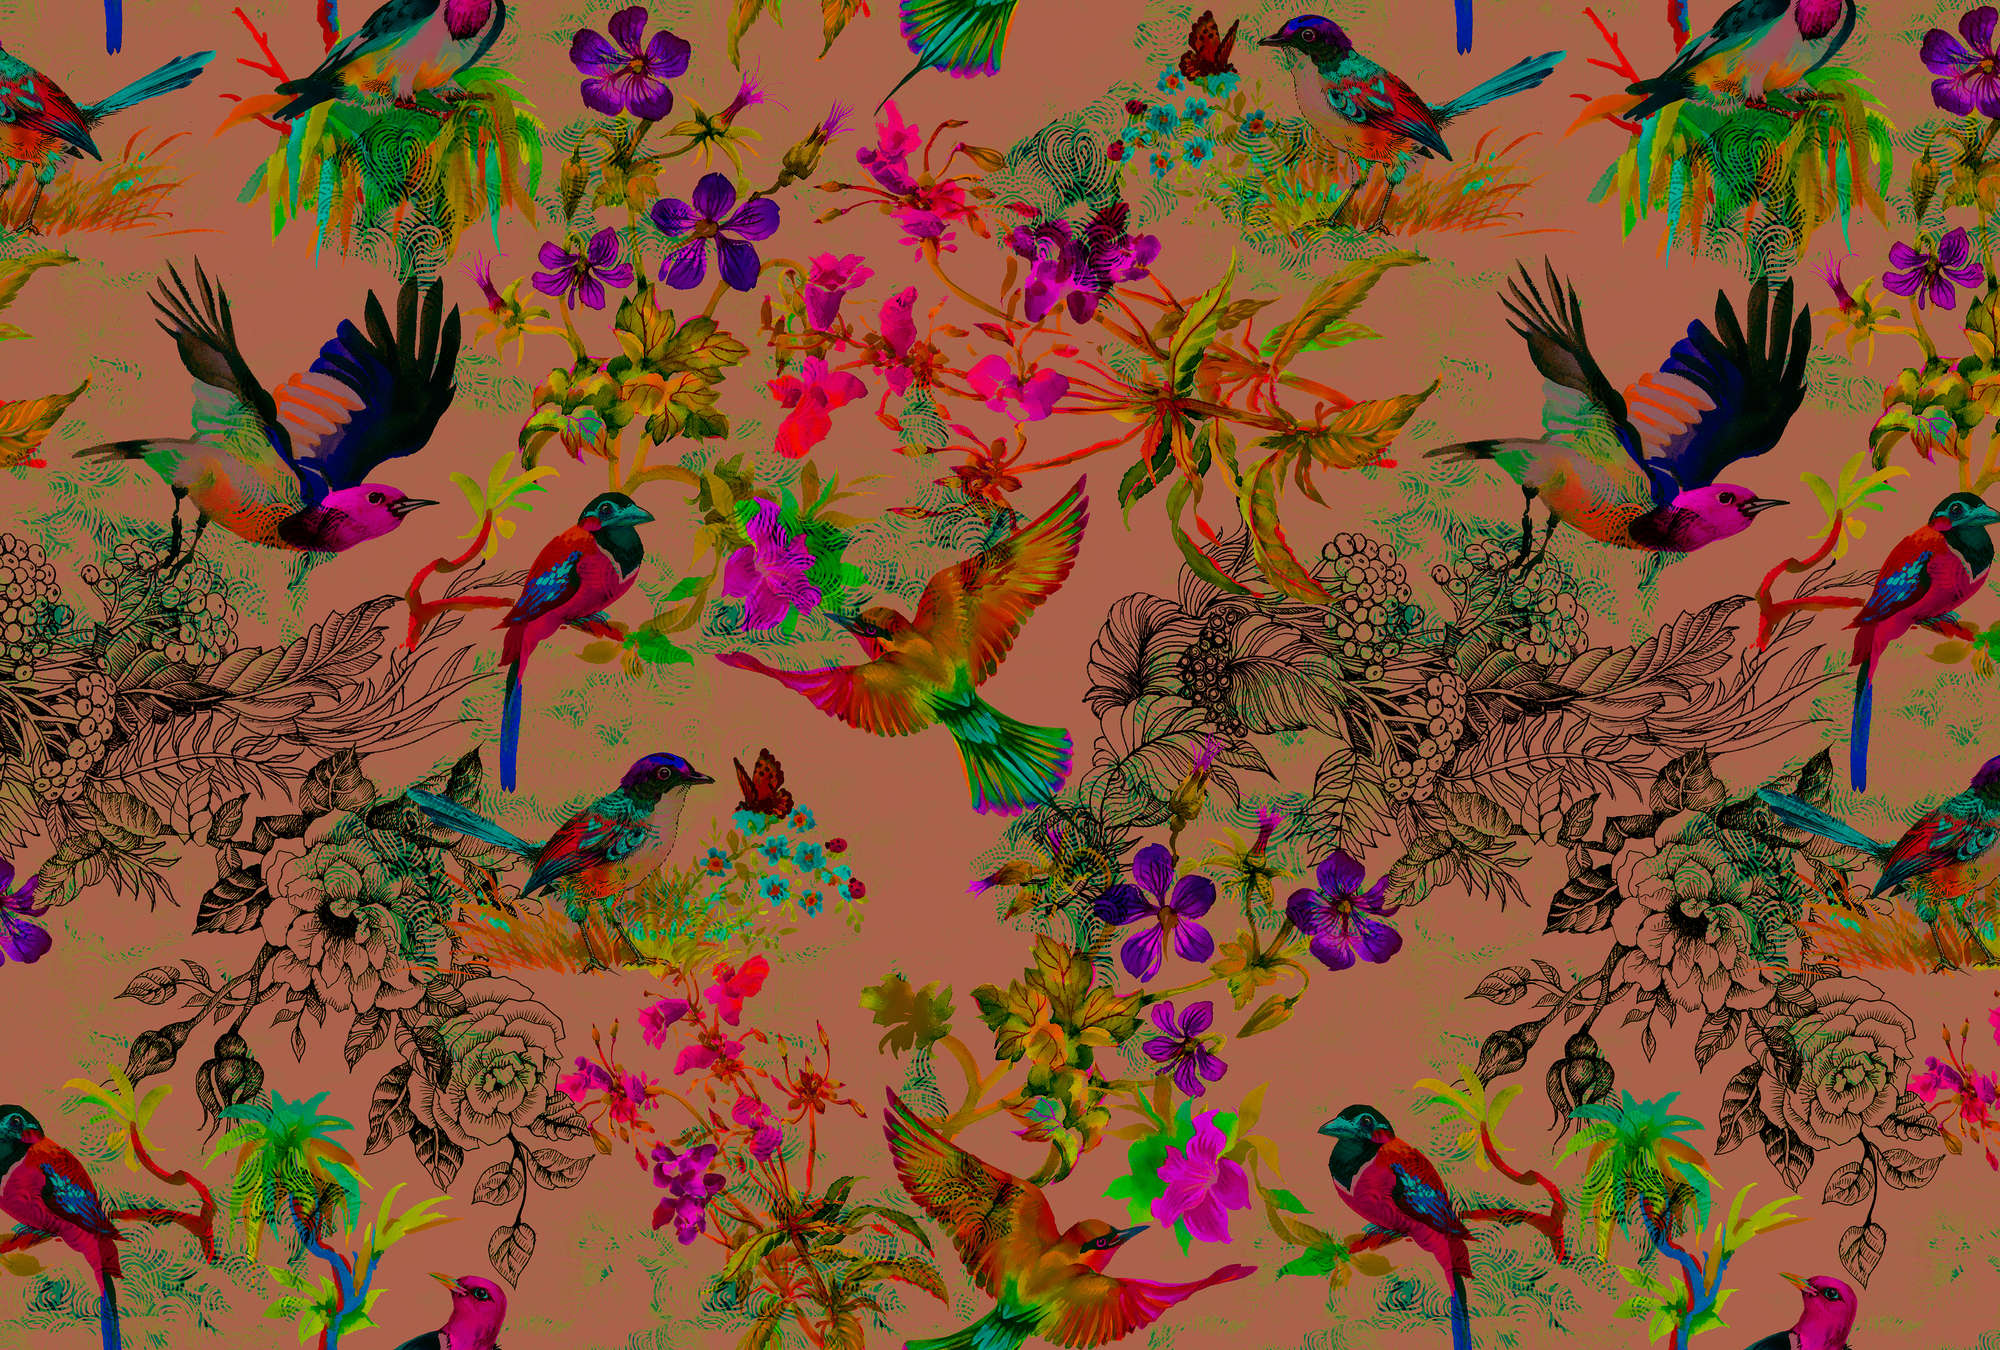             Vogel Fototapete im bunten Collage Stil – Bunt, Braun
        